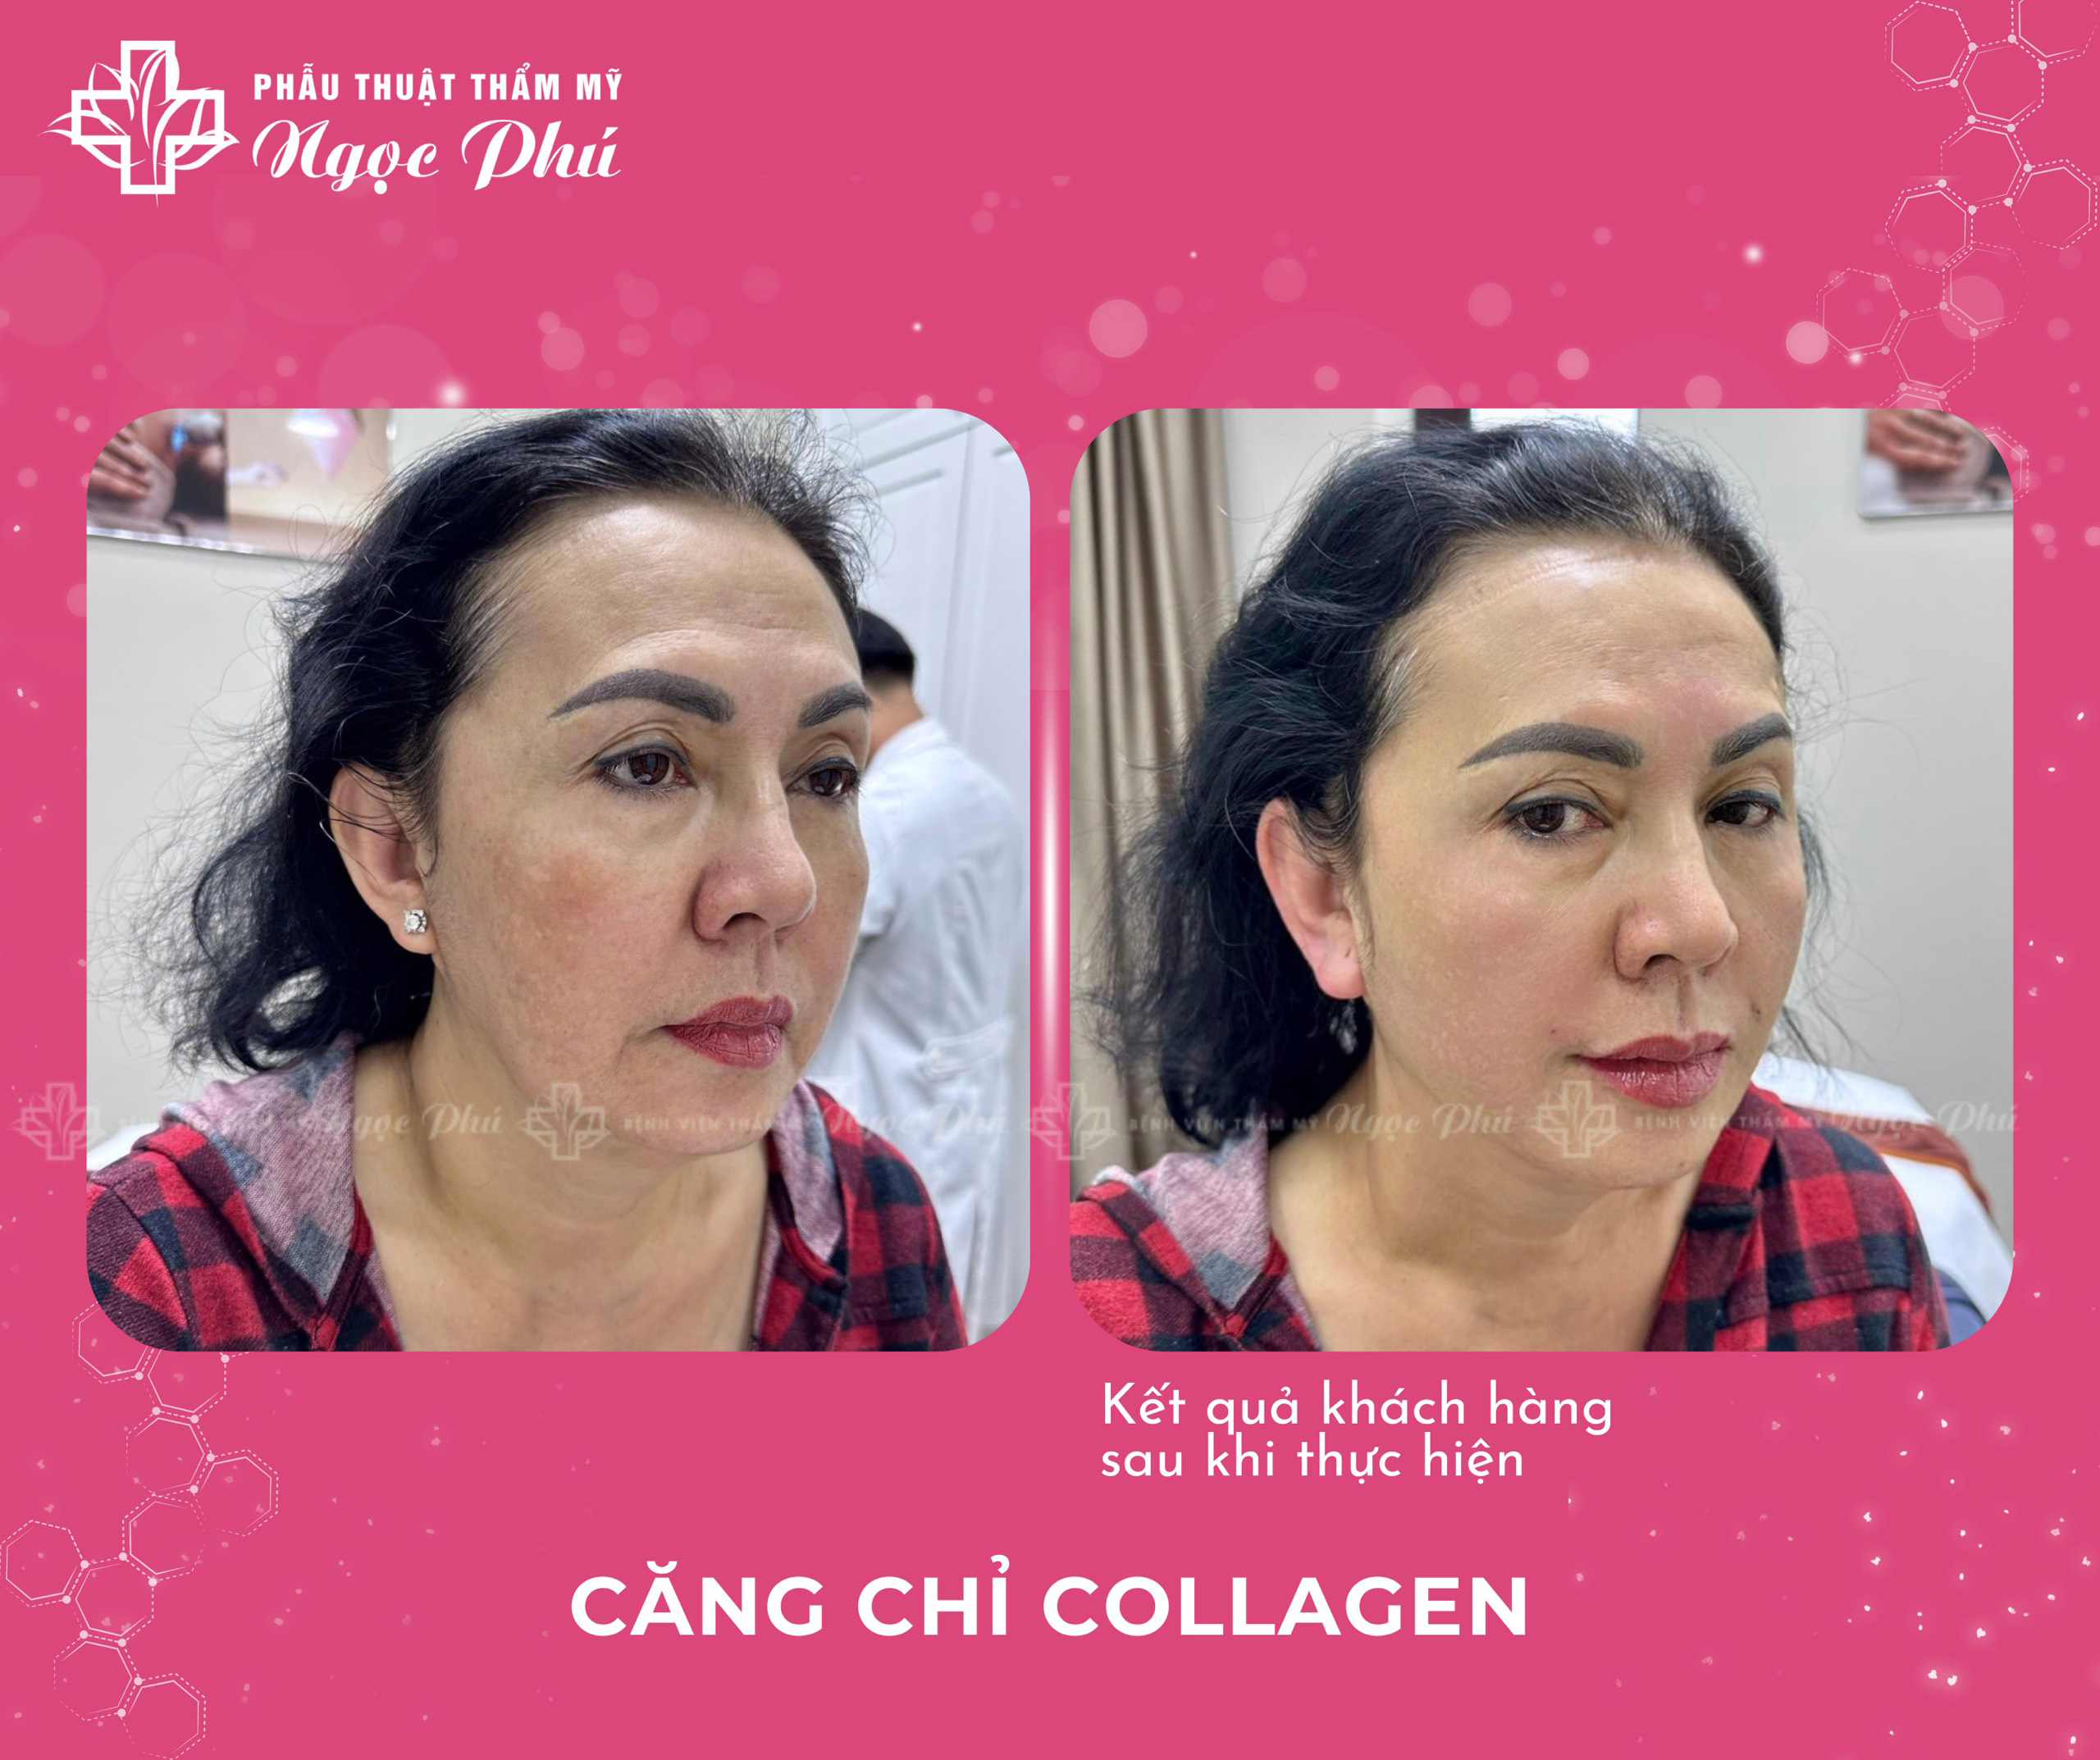 Thẩm mỹ Ngọc Phú được xem là địa chỉ căng da mặt bằng chỉ collagen uy tín, chất lượng tại TP Hồ Chí Minh